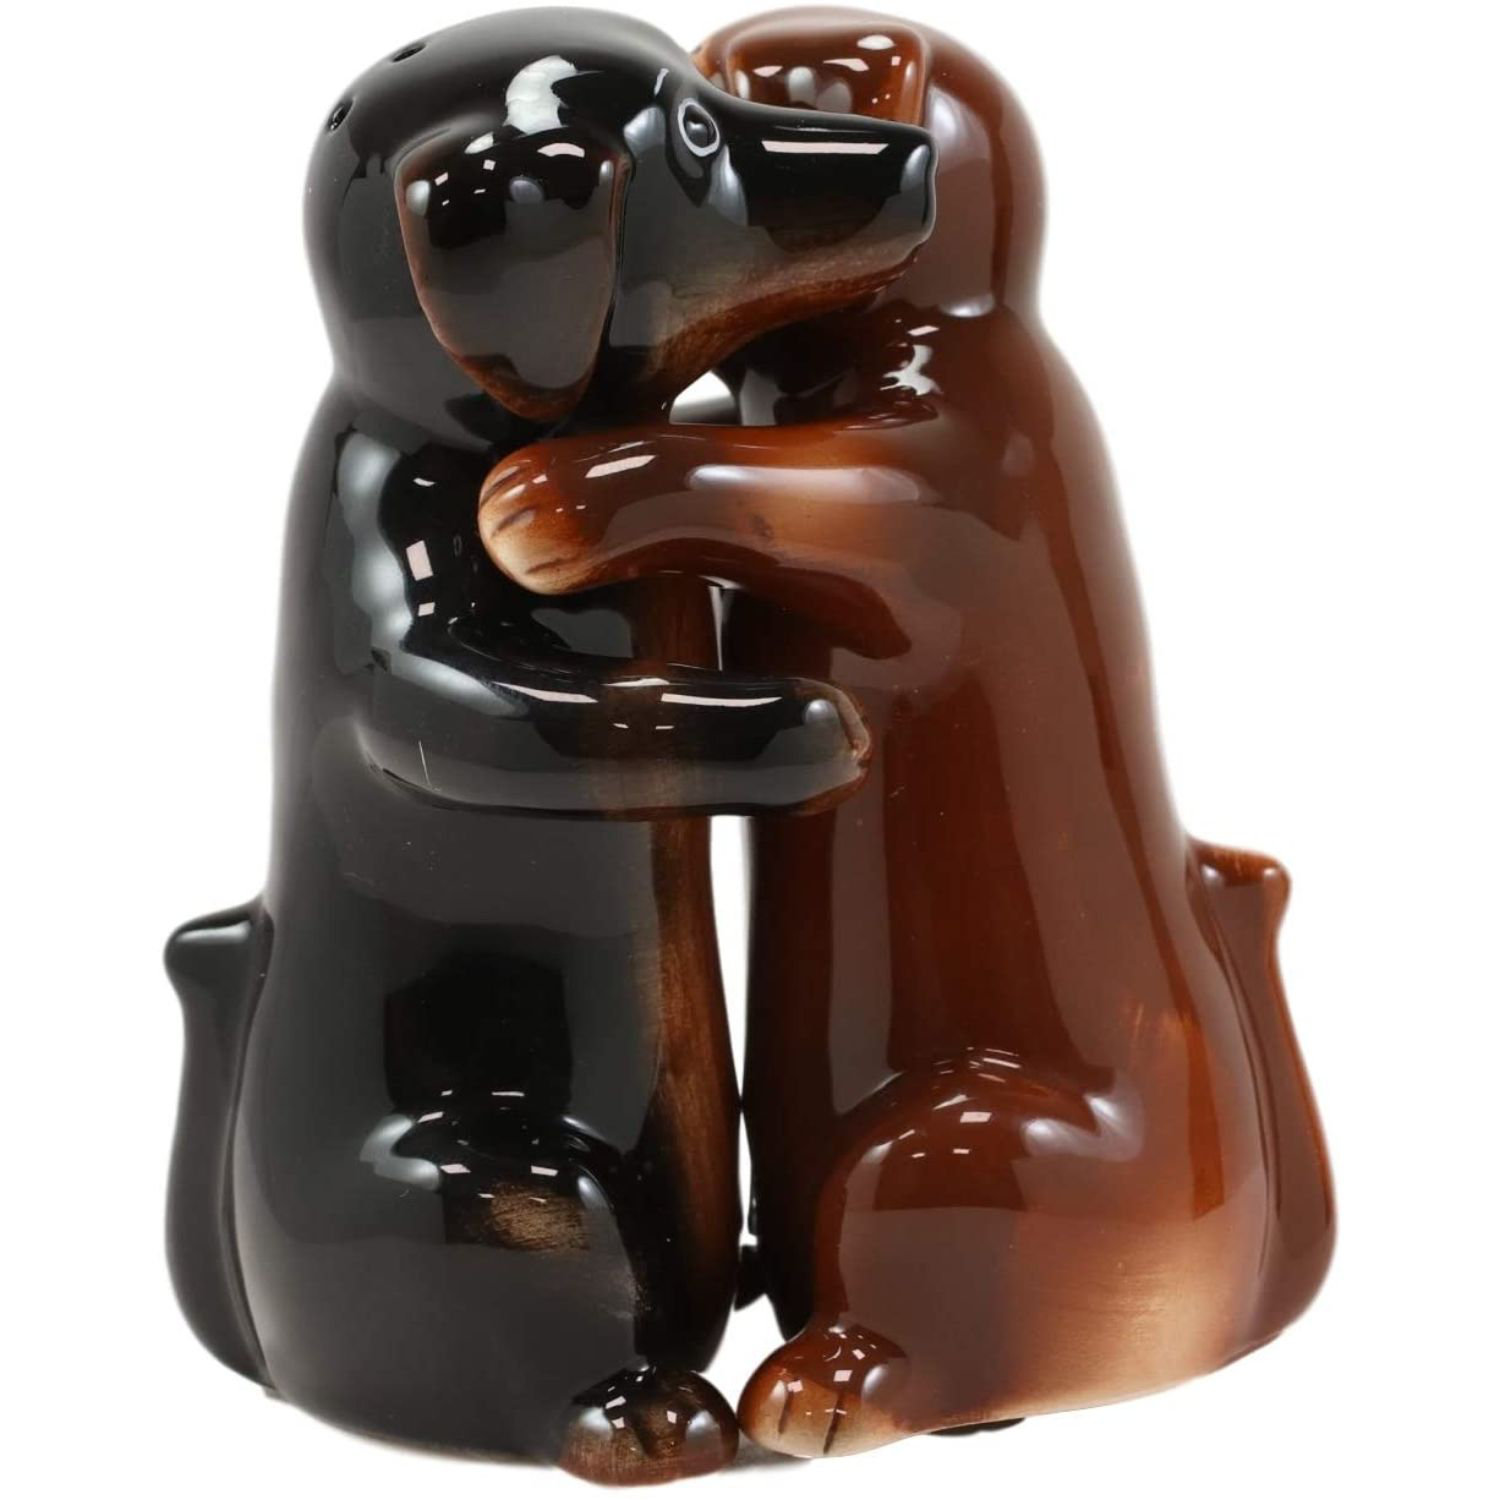 New SALT & PEPPER SHAKERS Dachshund Weiner Dog SET Figurine Figure PUPPY Kitchen